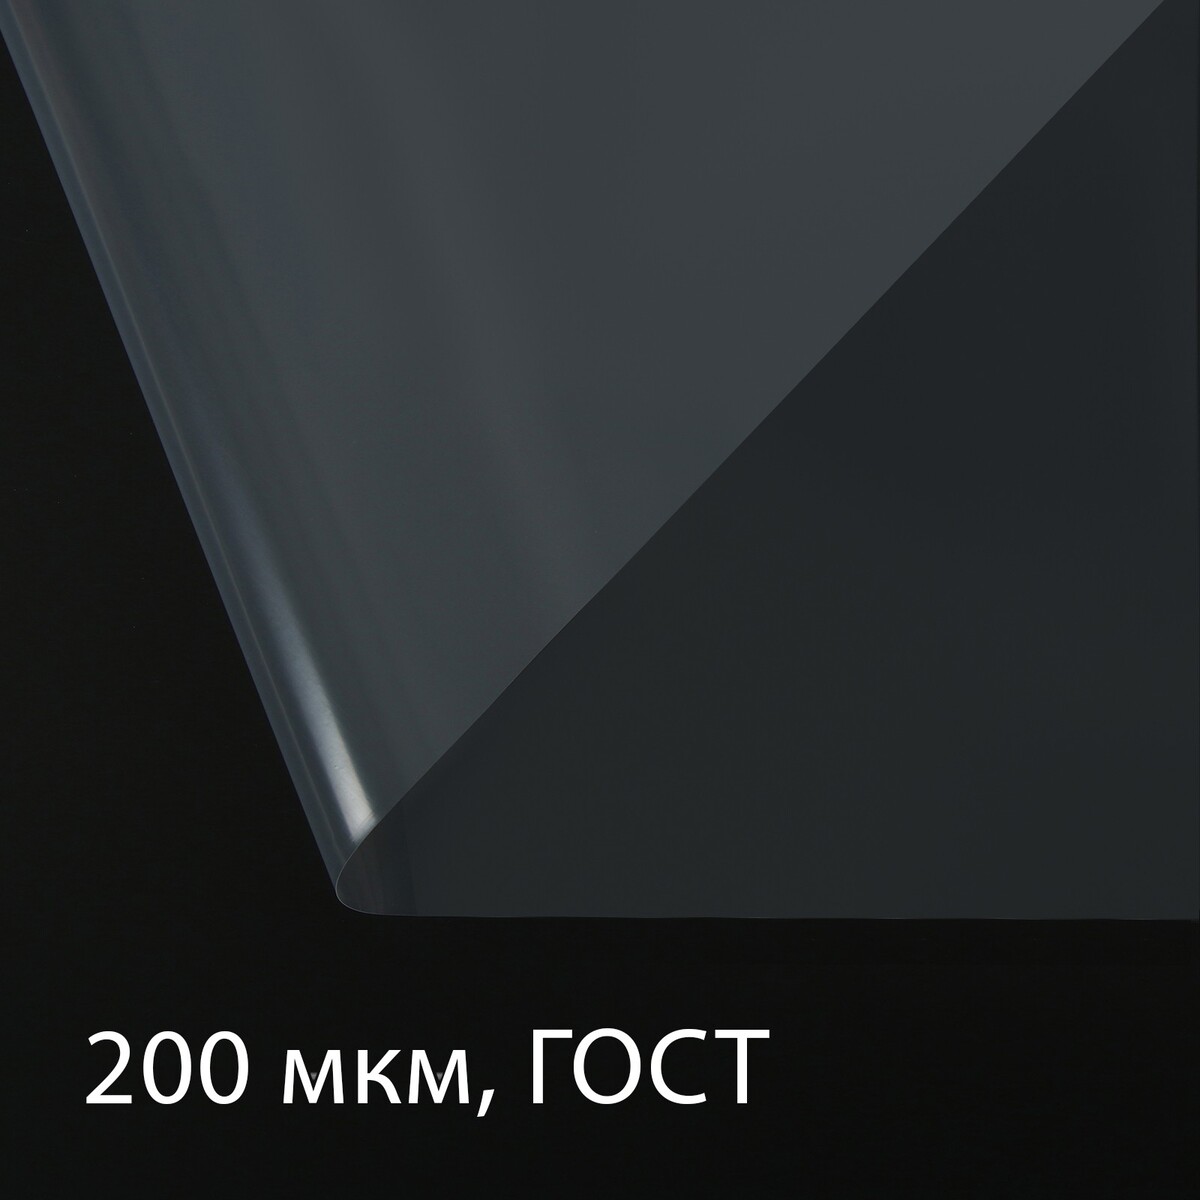 Пленка полиэтиленовая, толщина 200 мкм, прозрачная, 5 × 3 м, рукав (1.5 × 2 м), гост 10354-82